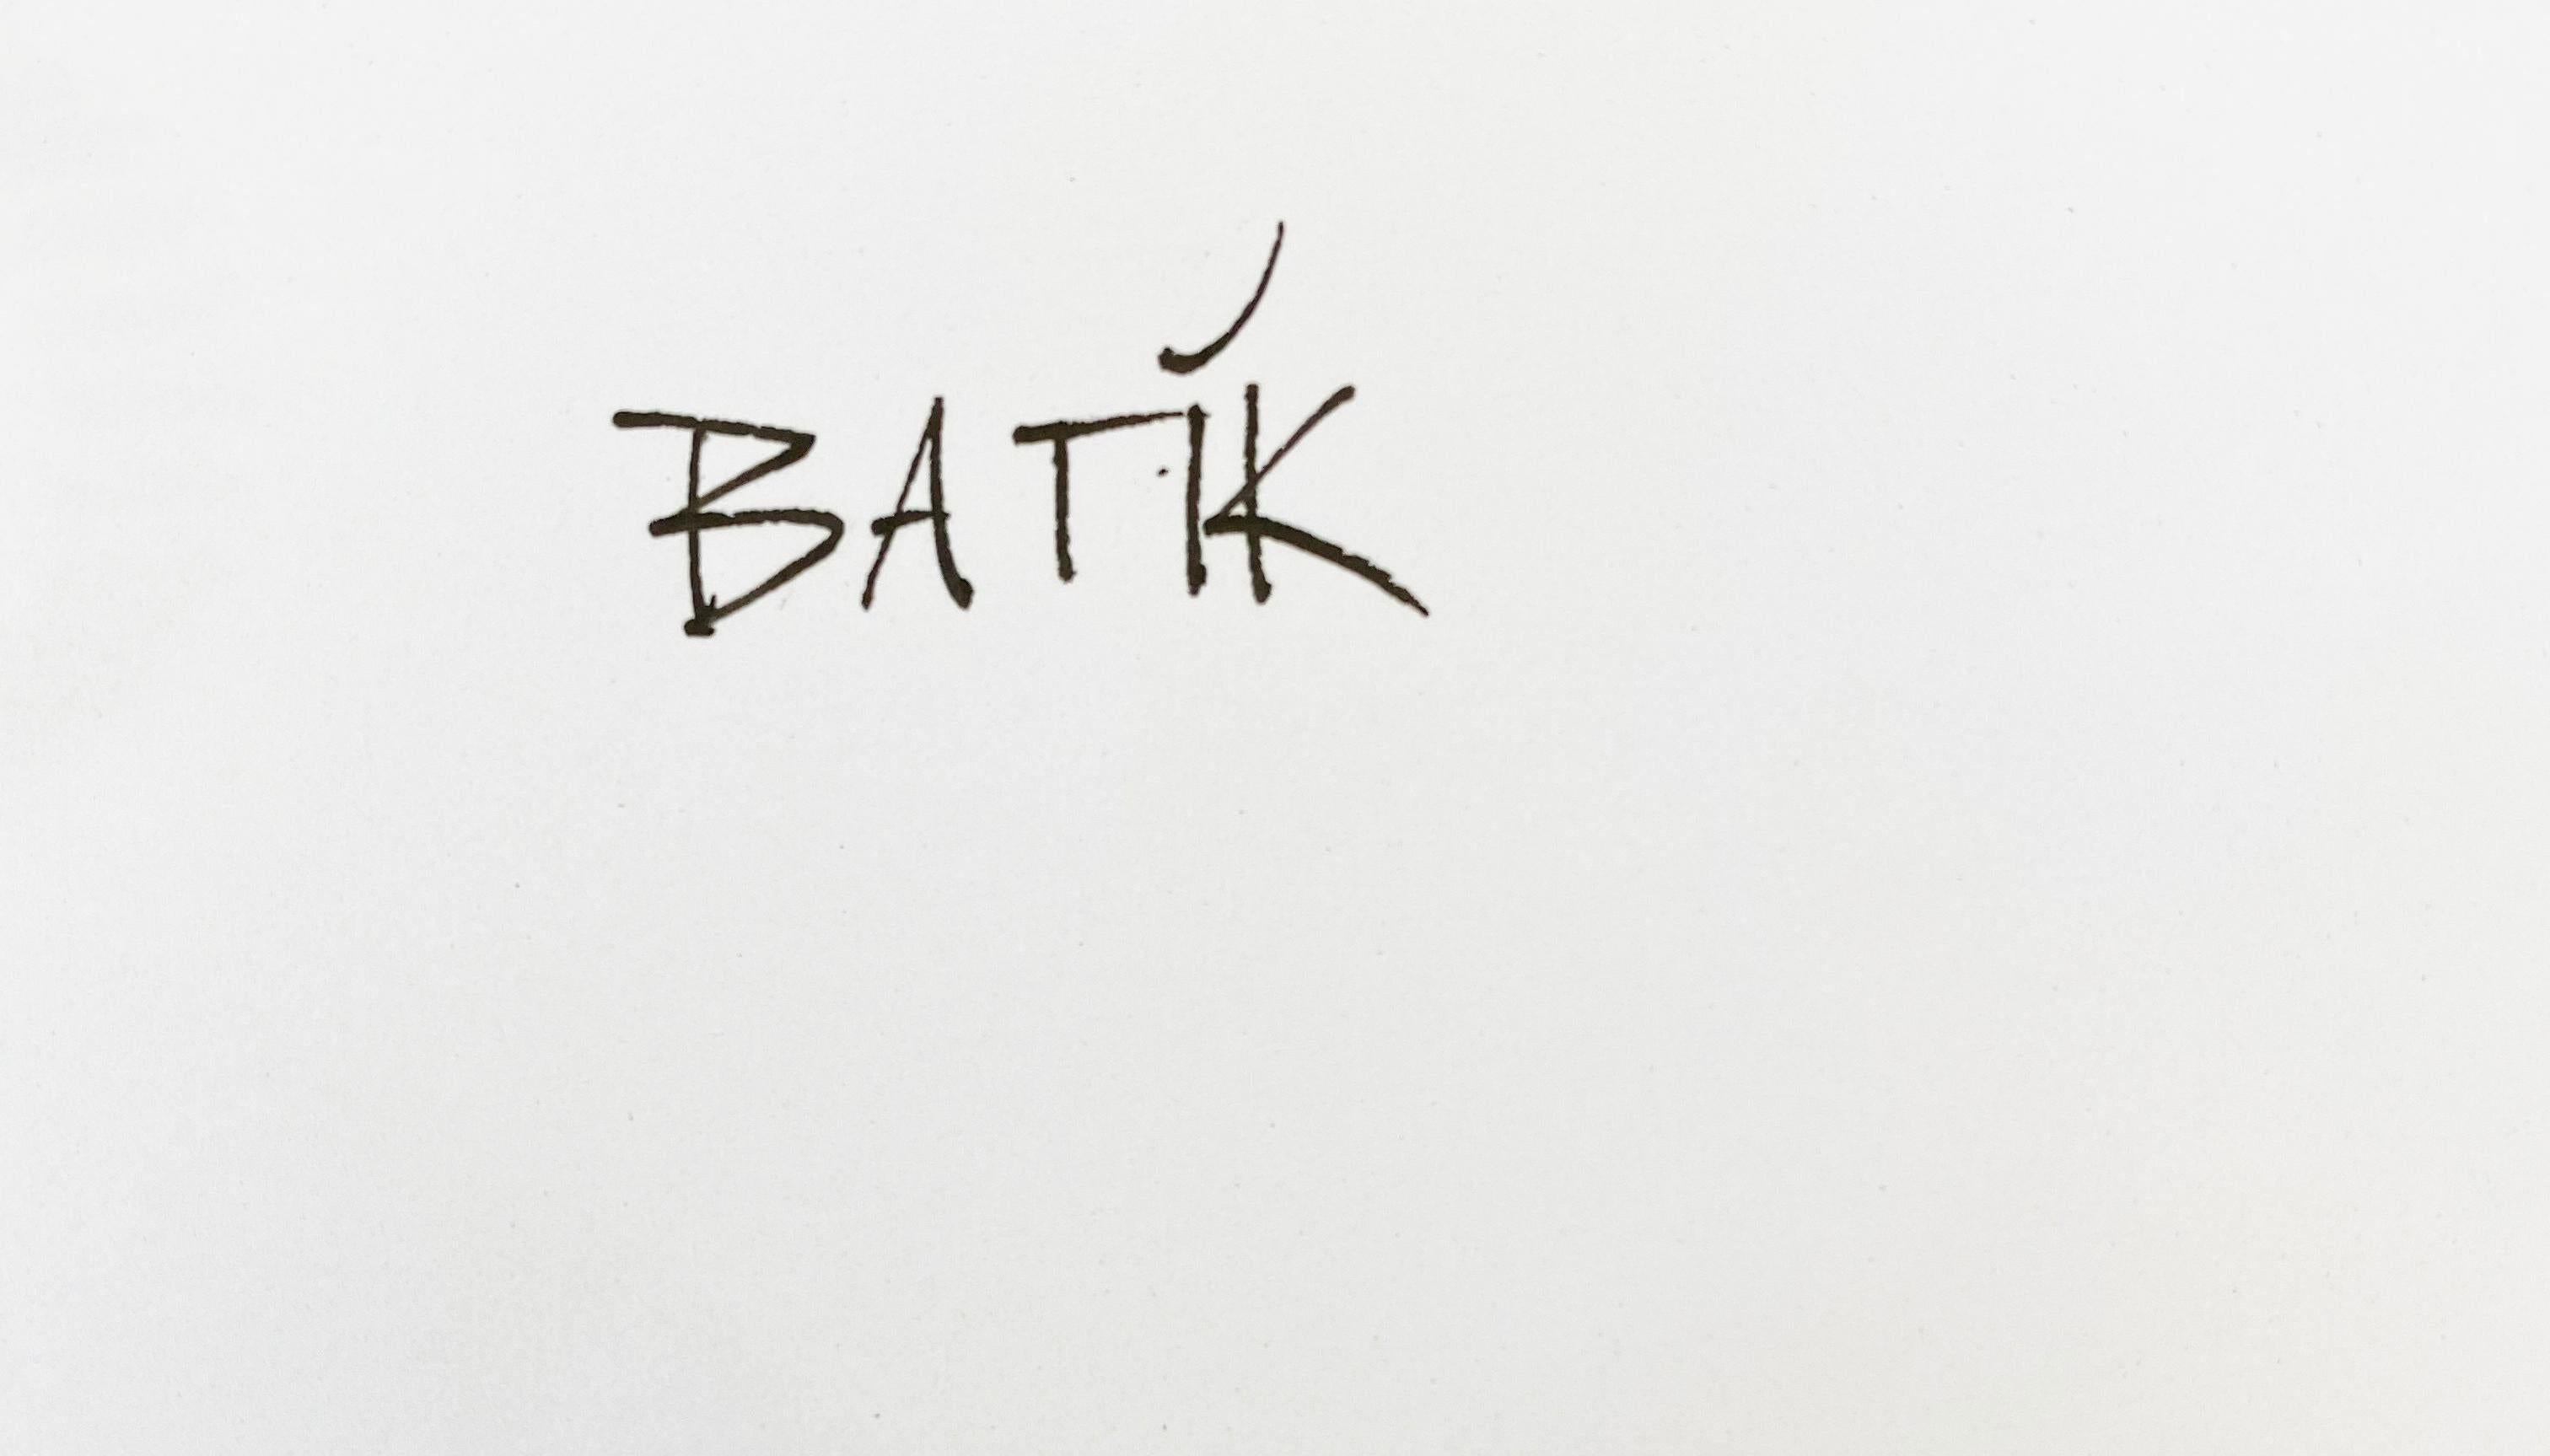 Ohh Baby!  - Übergröße Signiert Limitierte Auflage - Pop Art - Kate Moss

der in London ansässigen zeitgenössischen Pop-Art
bildschöpfer und Künstler, BATIK.

Maßnahmen  60 x 40